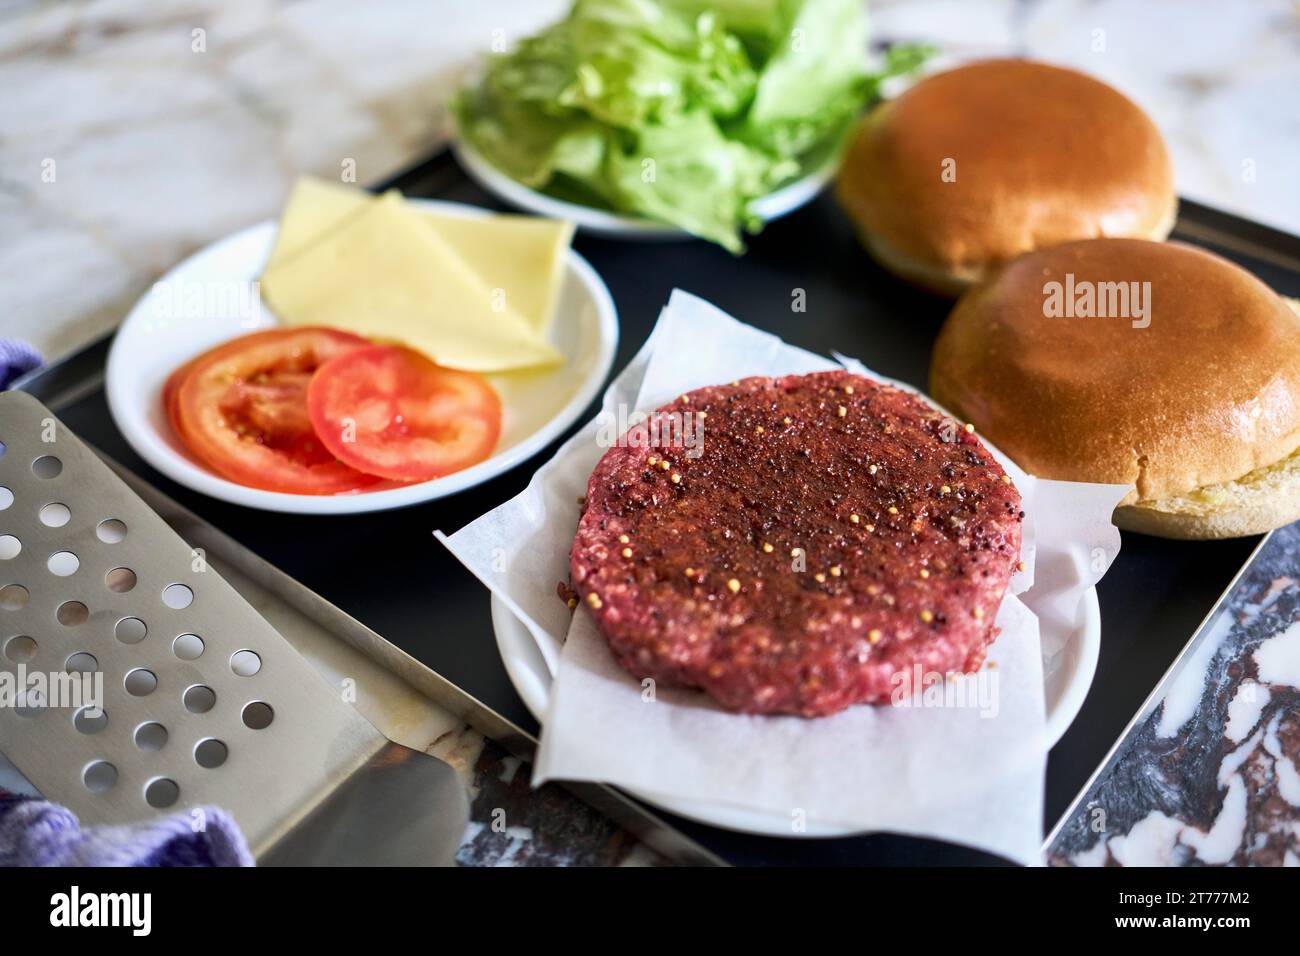 Patty de hamburger nature morte et ingrédients sur plateau Banque D'Images